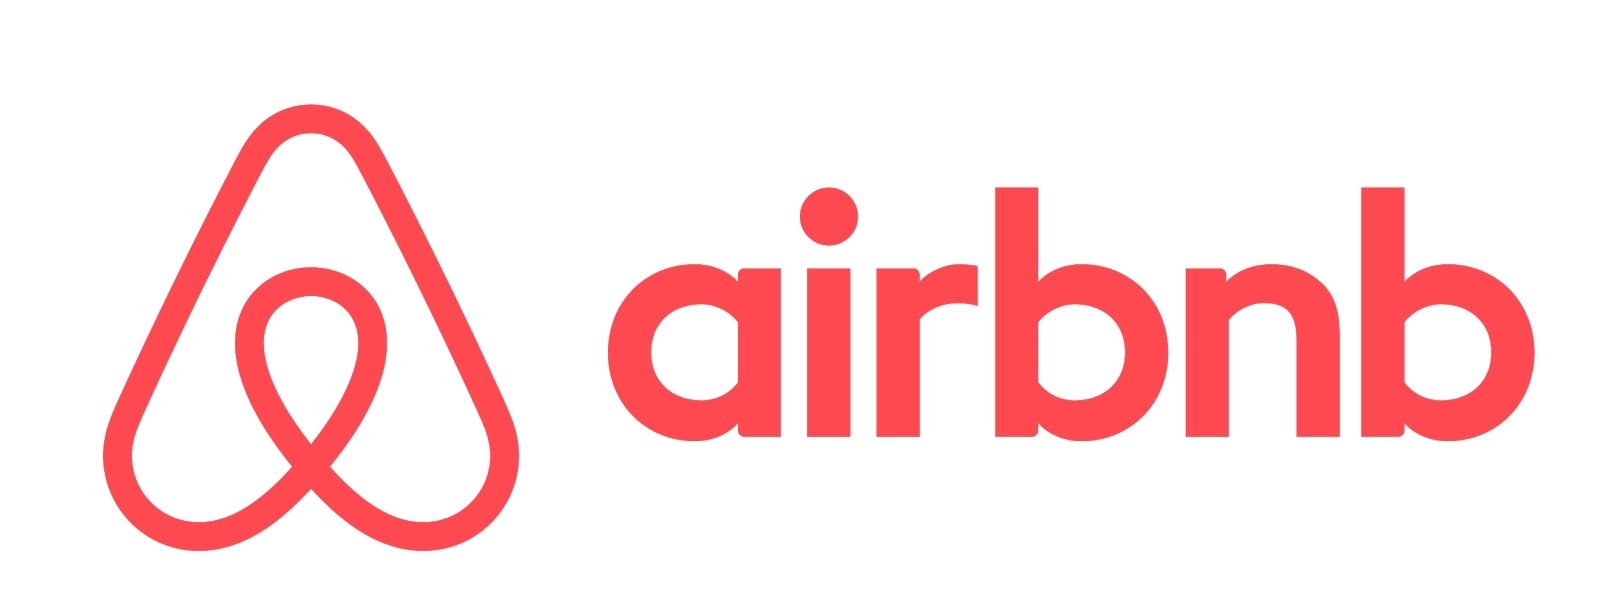 Visa et Airbnb s'associent pour permettre aux Hôtes d'être payés plus  rapidement grâce à Visa Direct | Business Wire